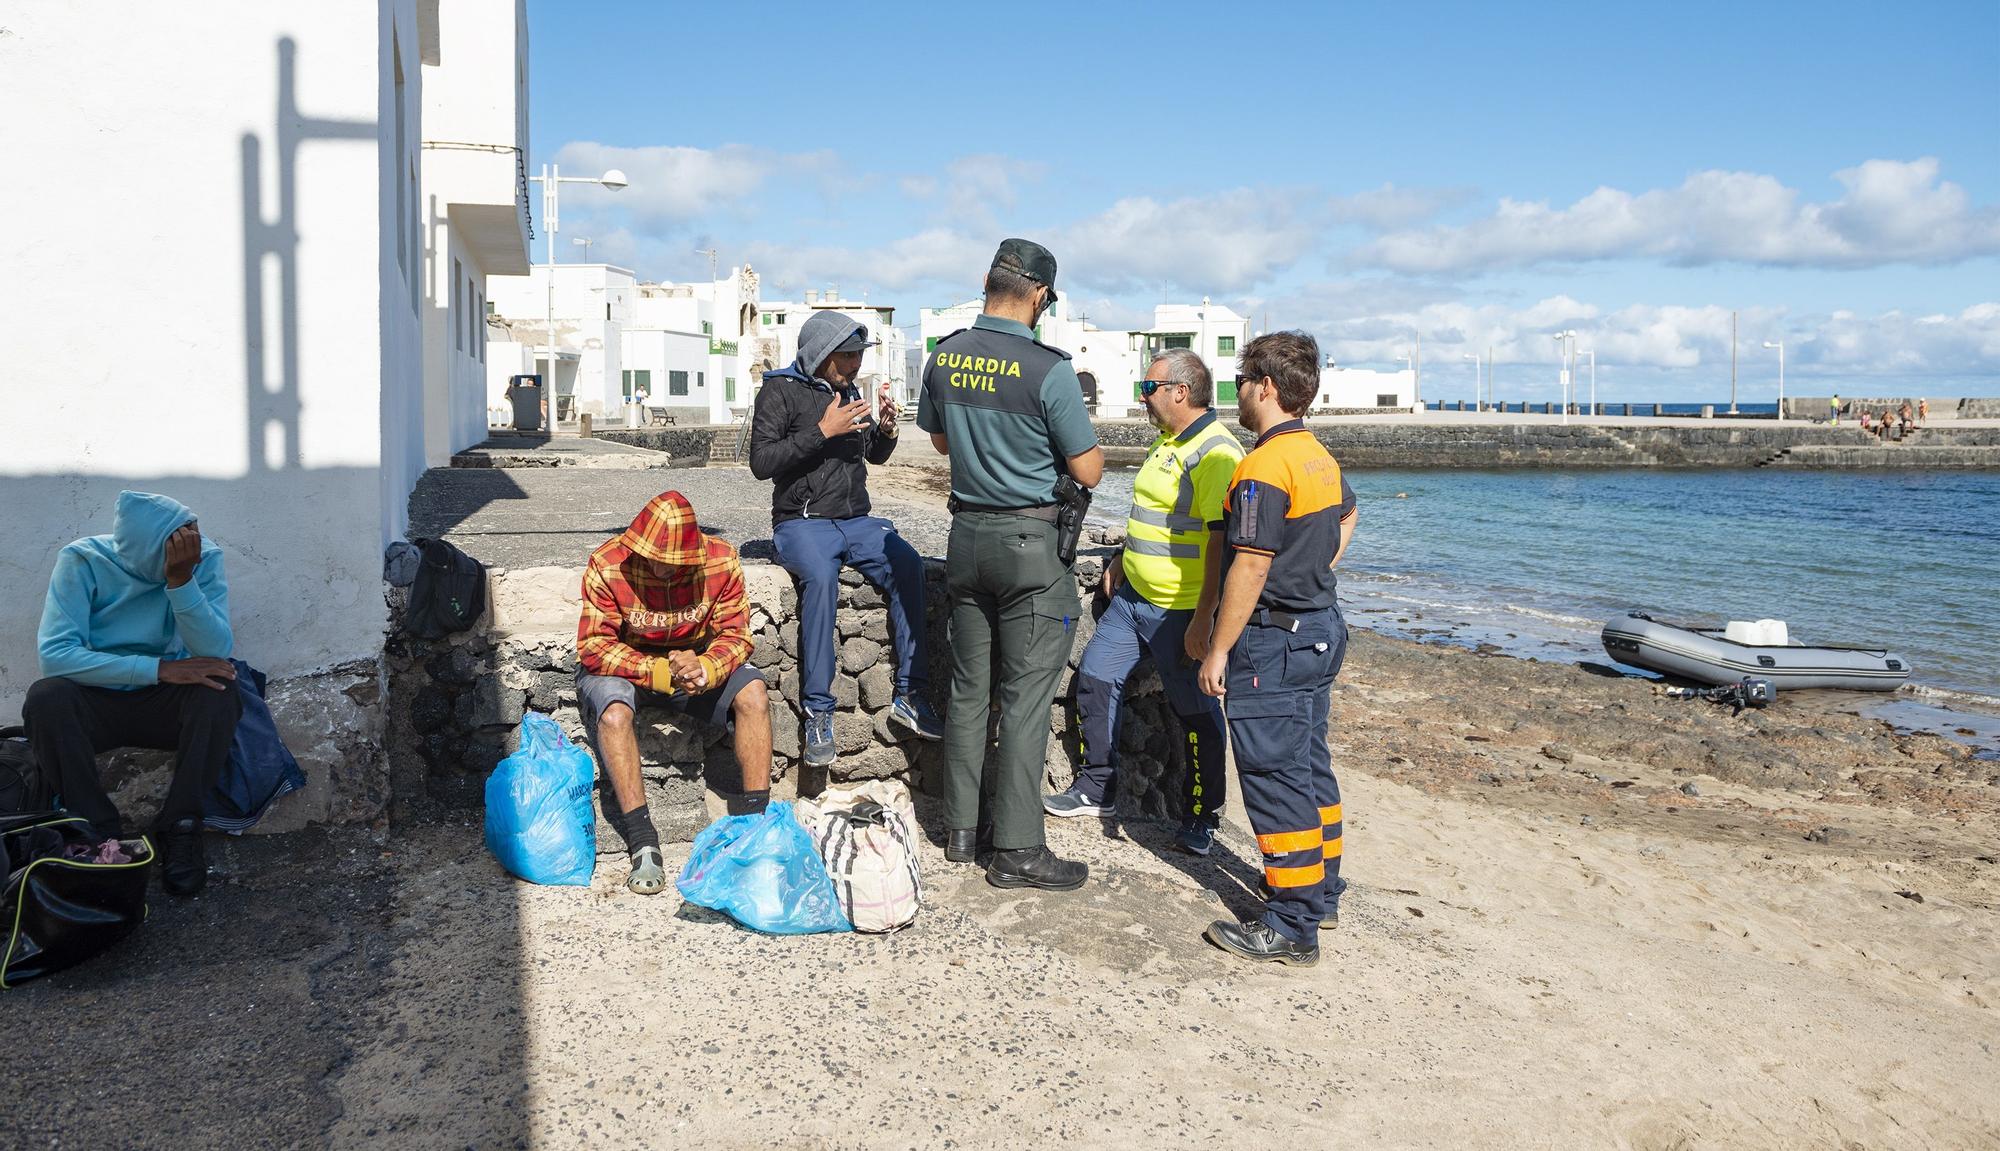 INMIGRACIÓN EN CANARIAS: Cuatro magrebíes llegan en una neumática a Caleta  de Famara (Lanzarote)